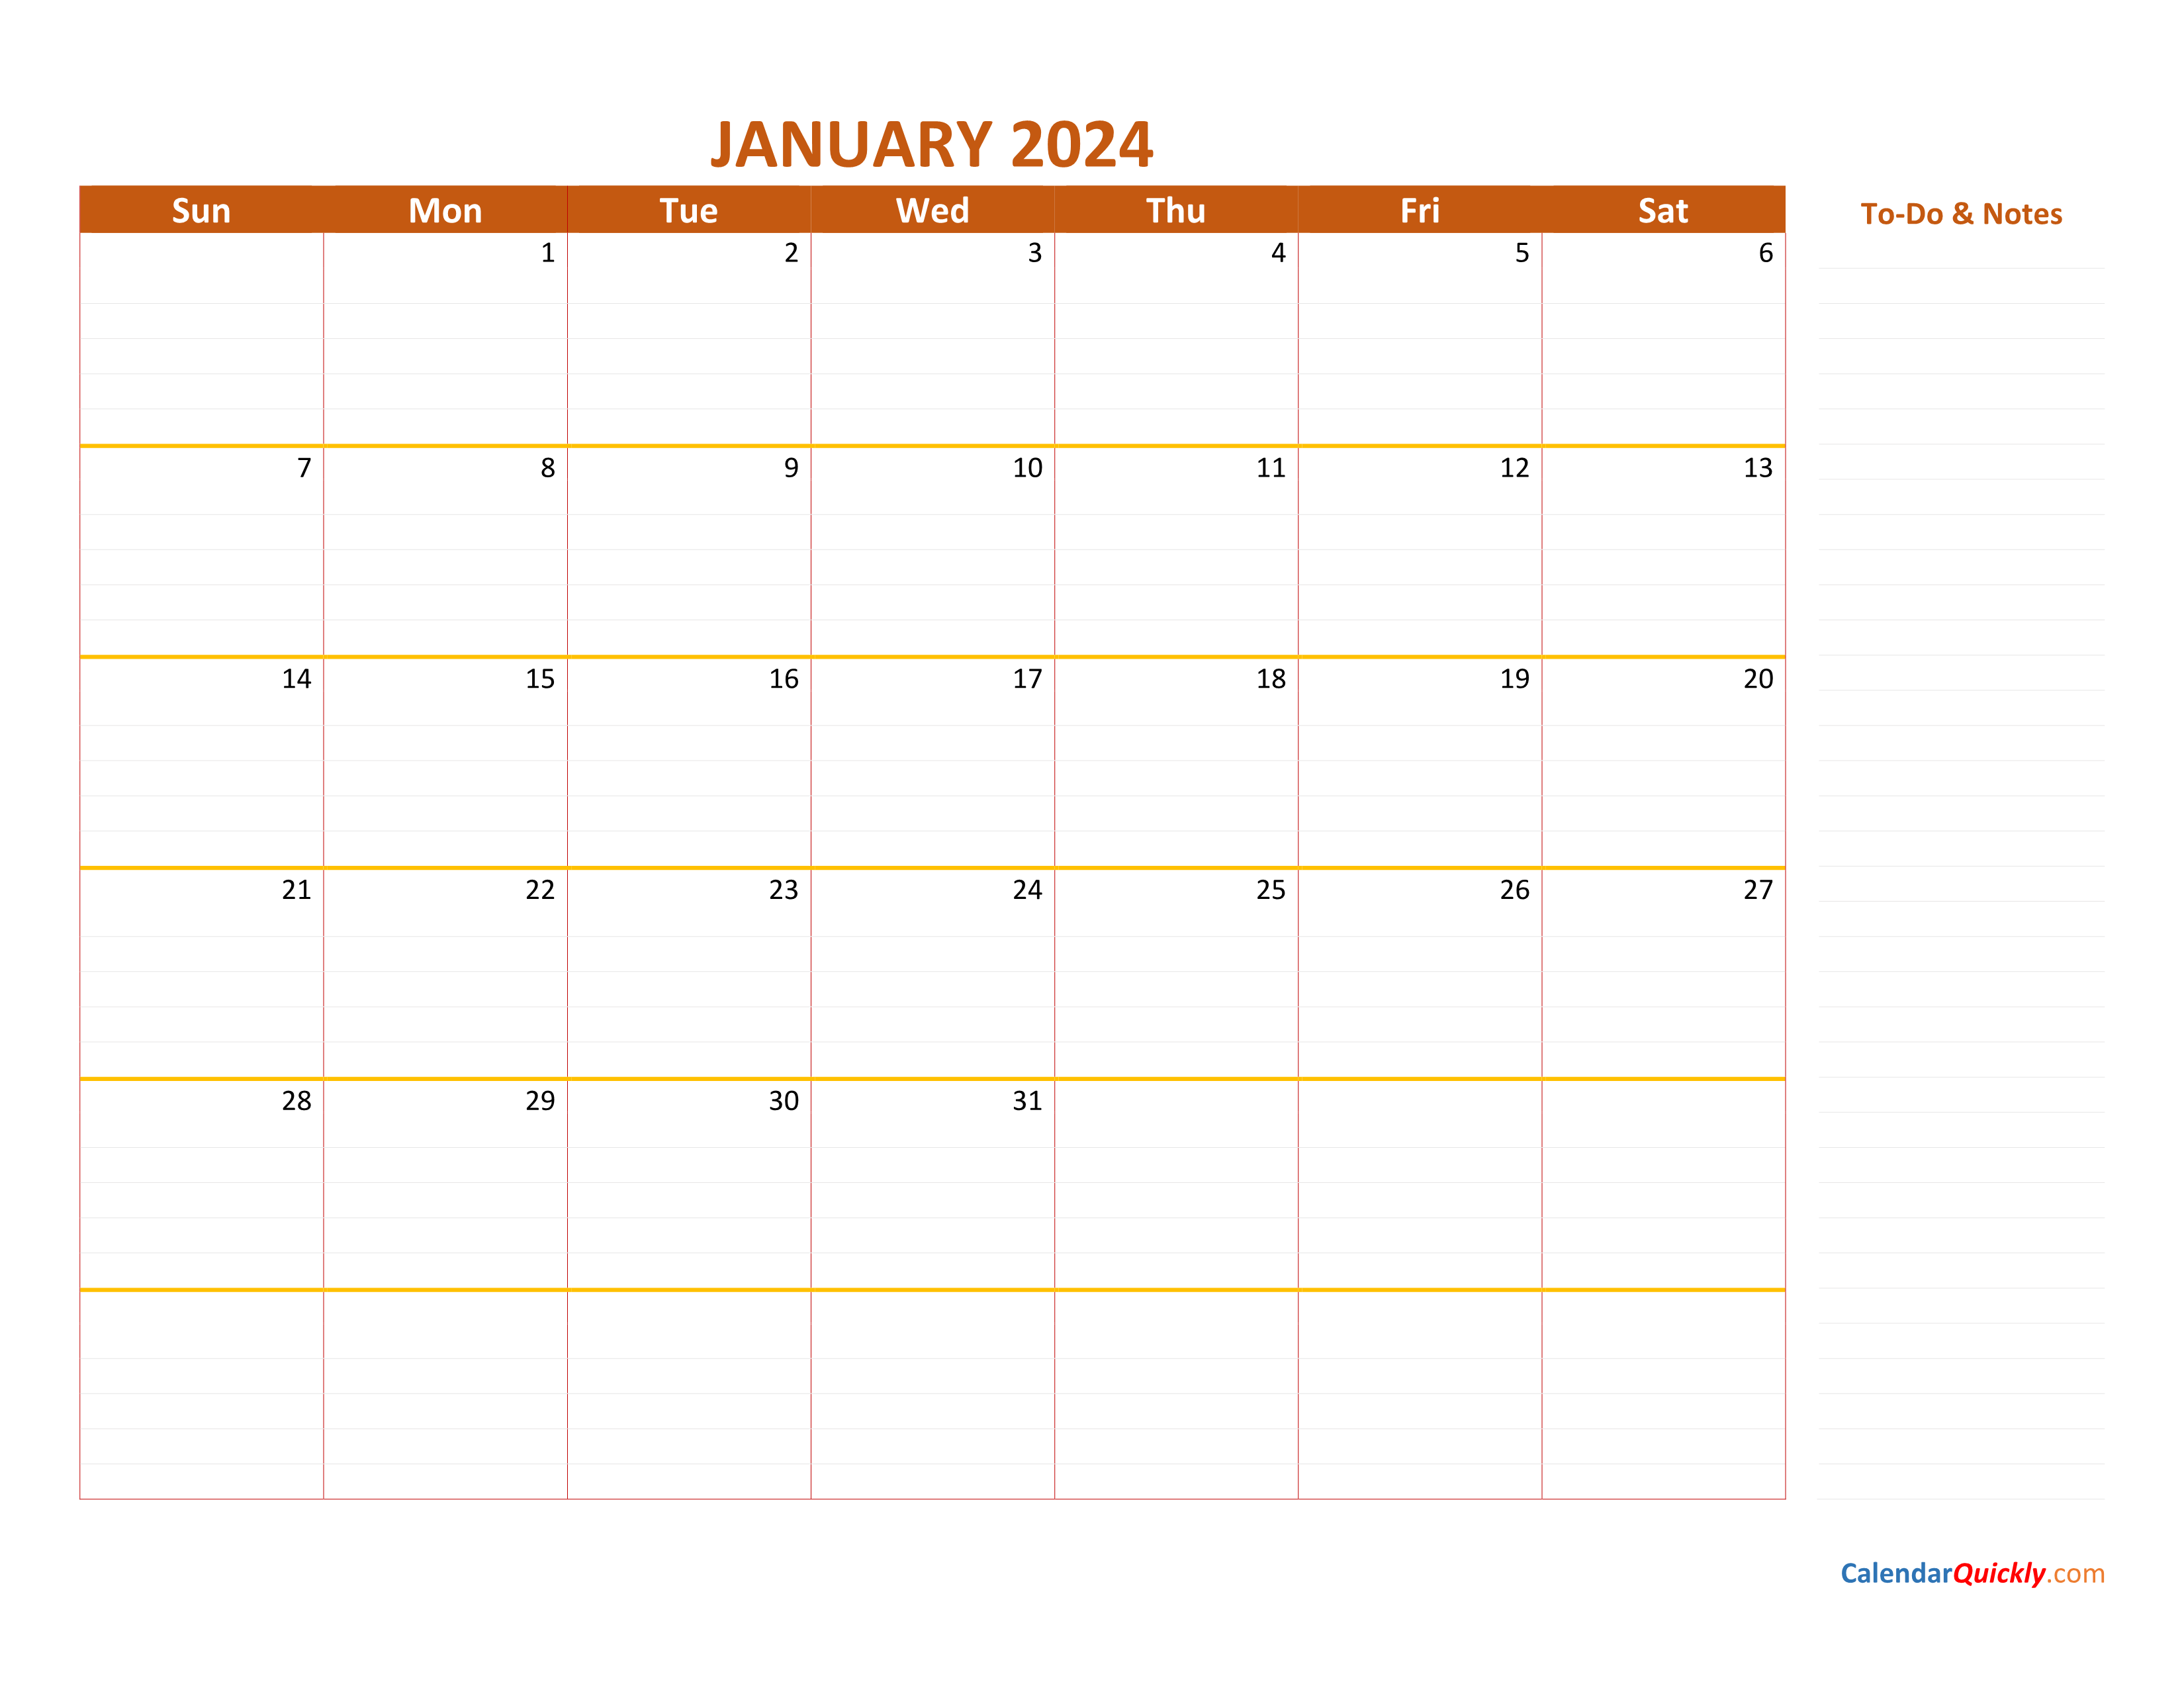 January 2024 Calendar Calendar Quickly